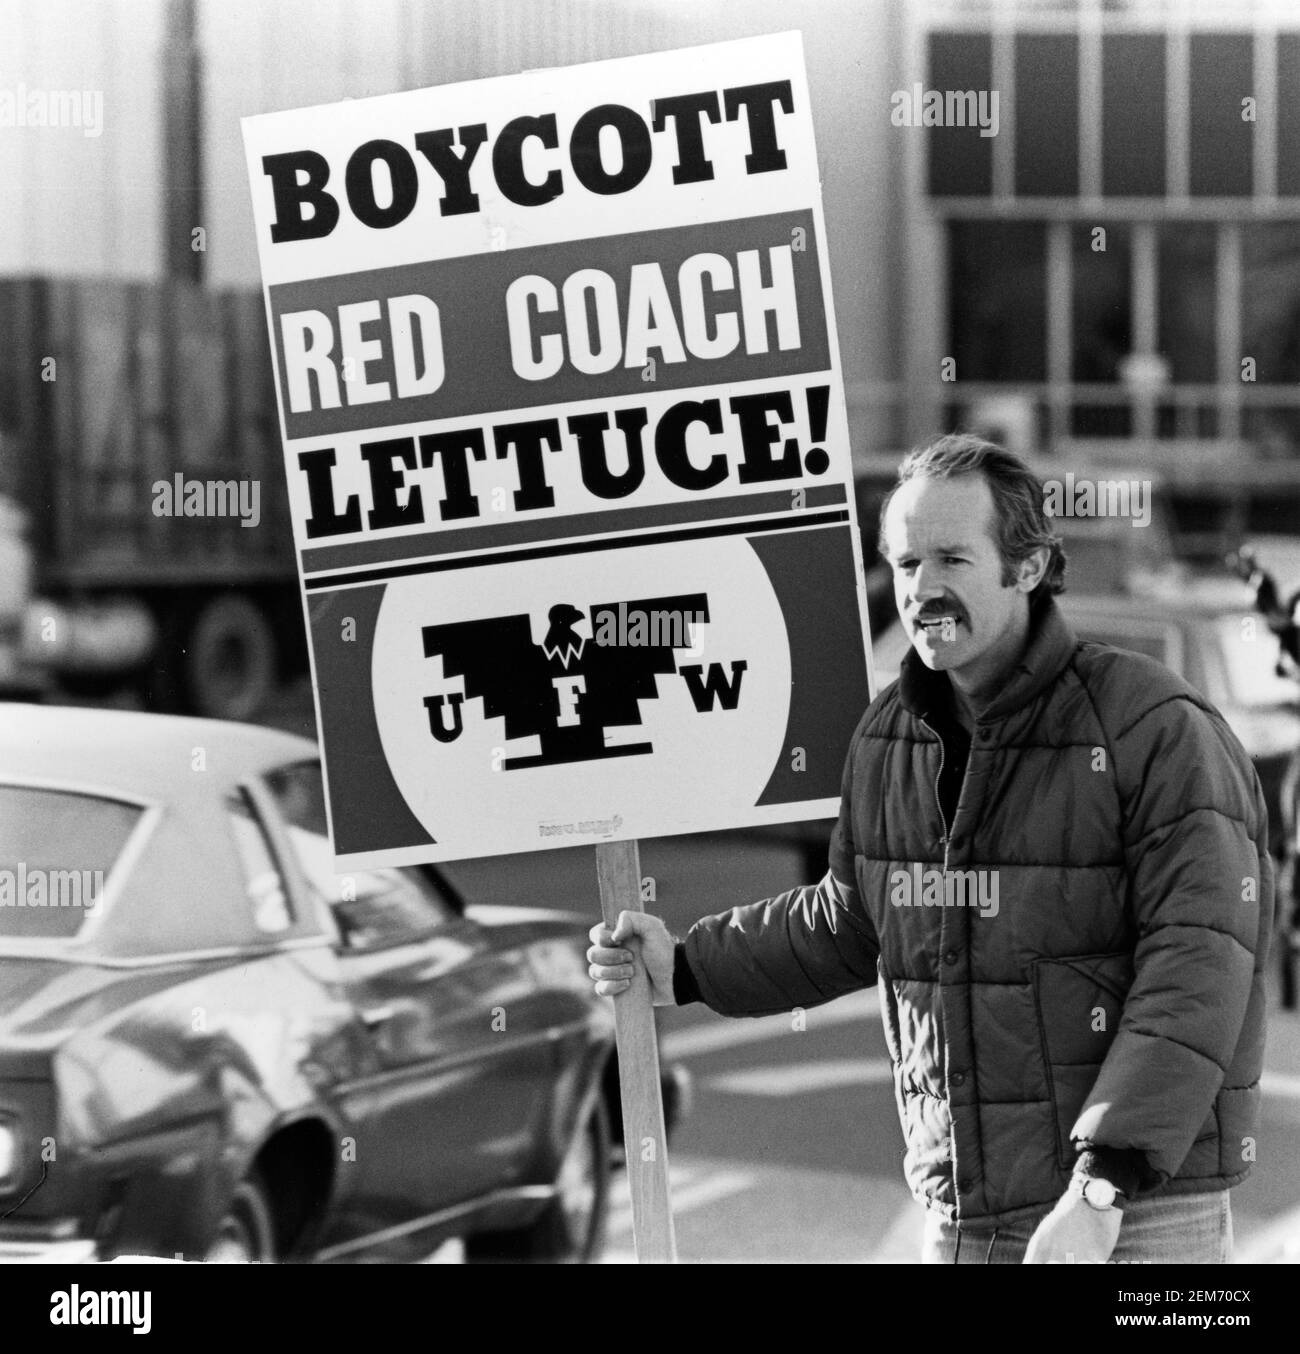 L'attore Mike Farrell della serie televisiva di successo Mash ha protestato contro la Red Coach Lattuce con gli United Farm Workers su una strada trafficata a Hollywood, CA, 1979 Foto Stock